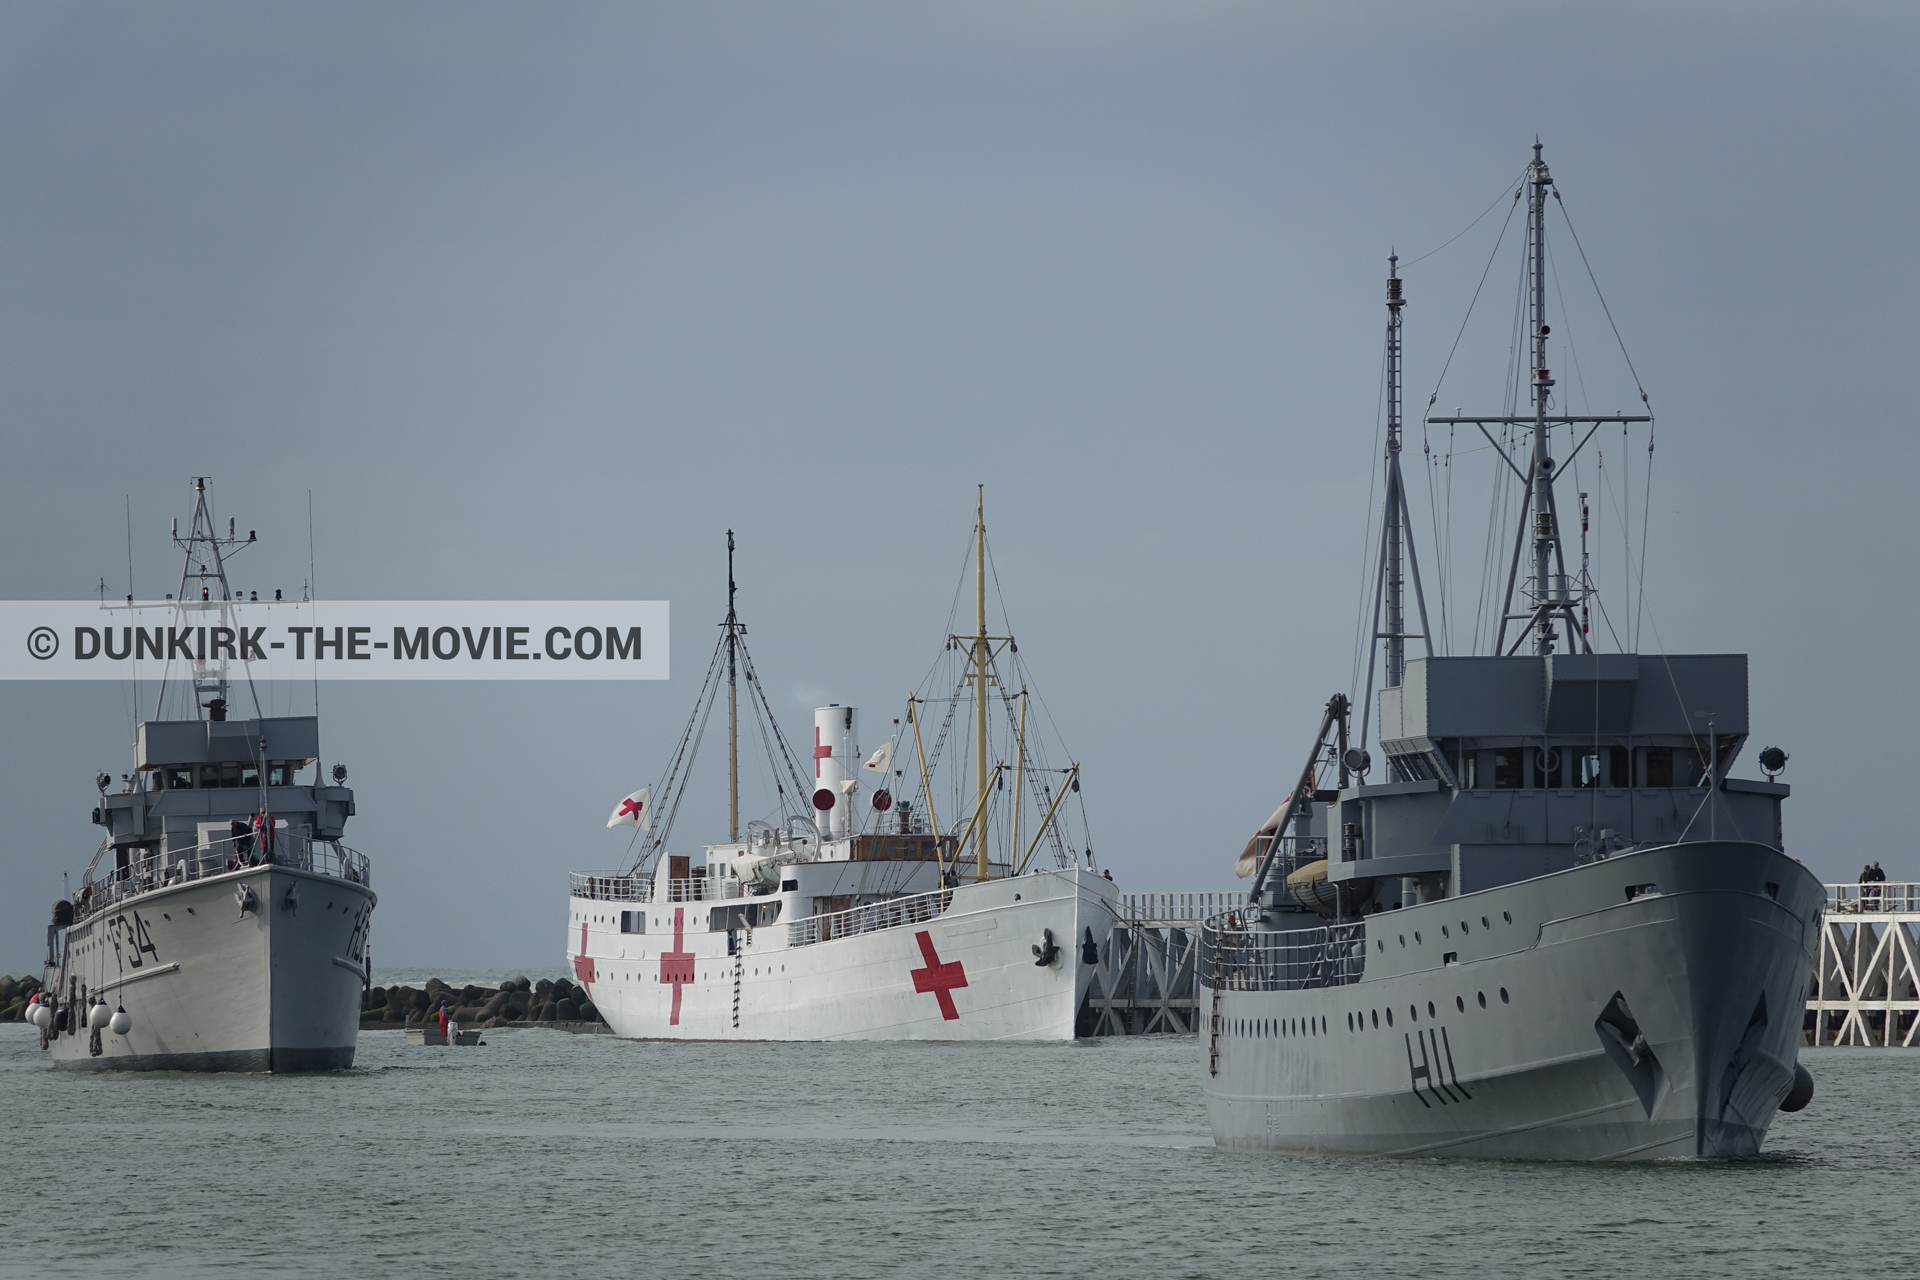 Fotos con cielo gris, F34 - Hr.Ms. Sittard, H11 - MLV Castor, muelle del ESTE, mares calma, M/S Rogaland,  durante el rodaje de la película Dunkerque de Nolan